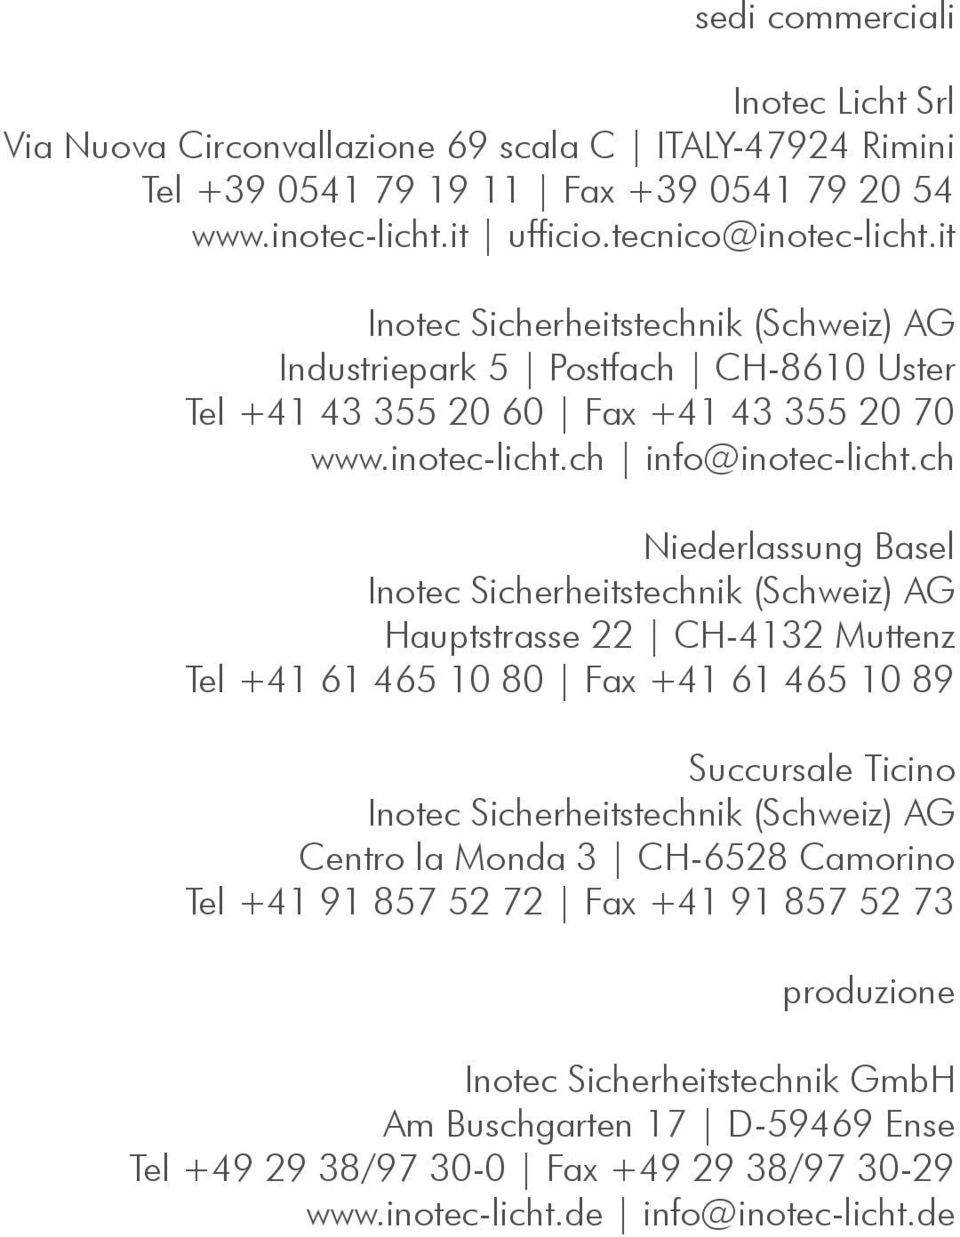 ch Niederlassung Basel Inotec Sicherheitstechnik (Schweiz) AG Hauptstrasse 22 CH-4132 Muttenz Tel +41 61 465 10 80 Fax +41 61 465 10 89 Succursale Ticino Inotec Sicherheitstechnik (Schweiz) AG